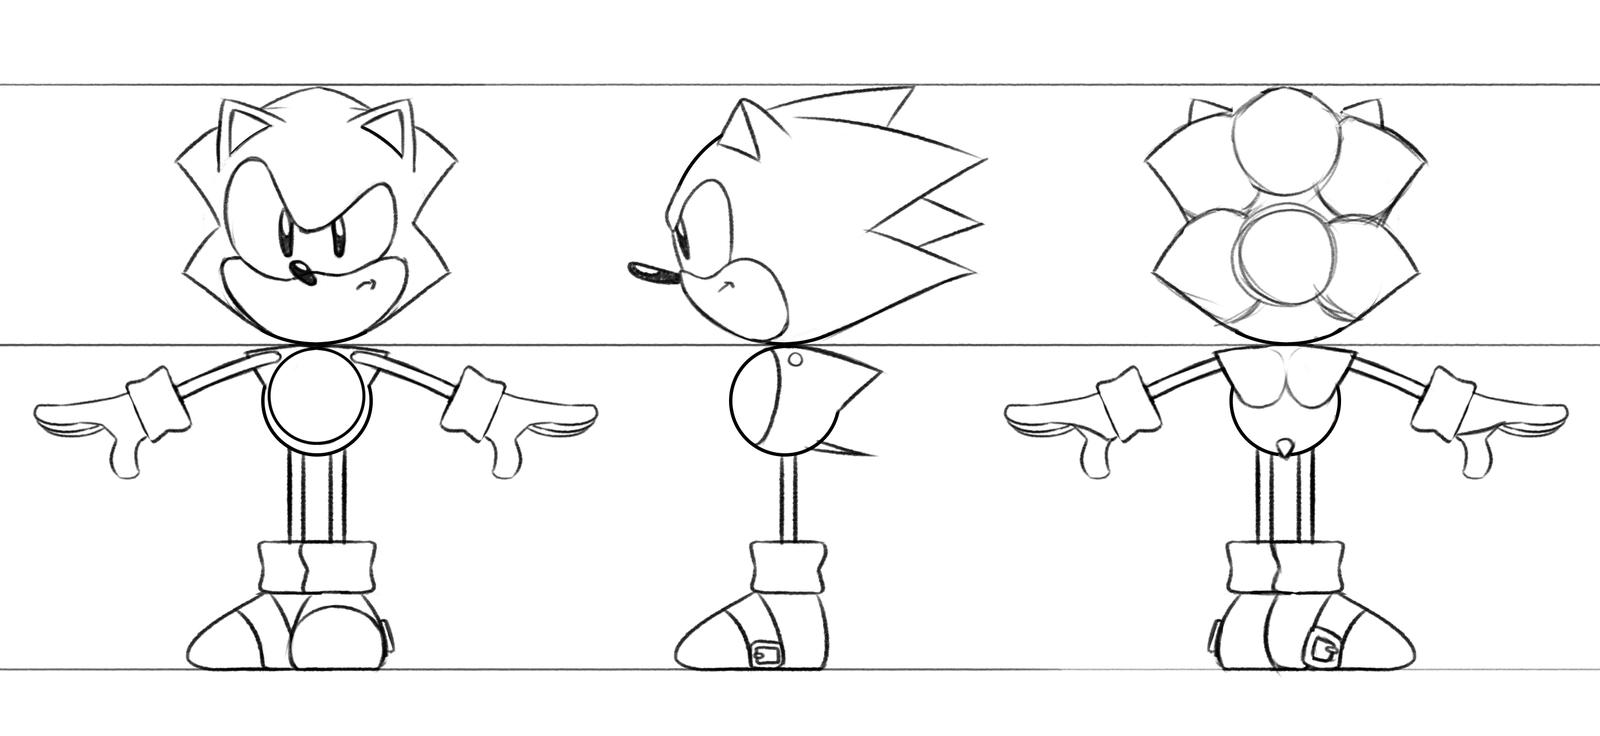 Classic Sonic Model Sheet